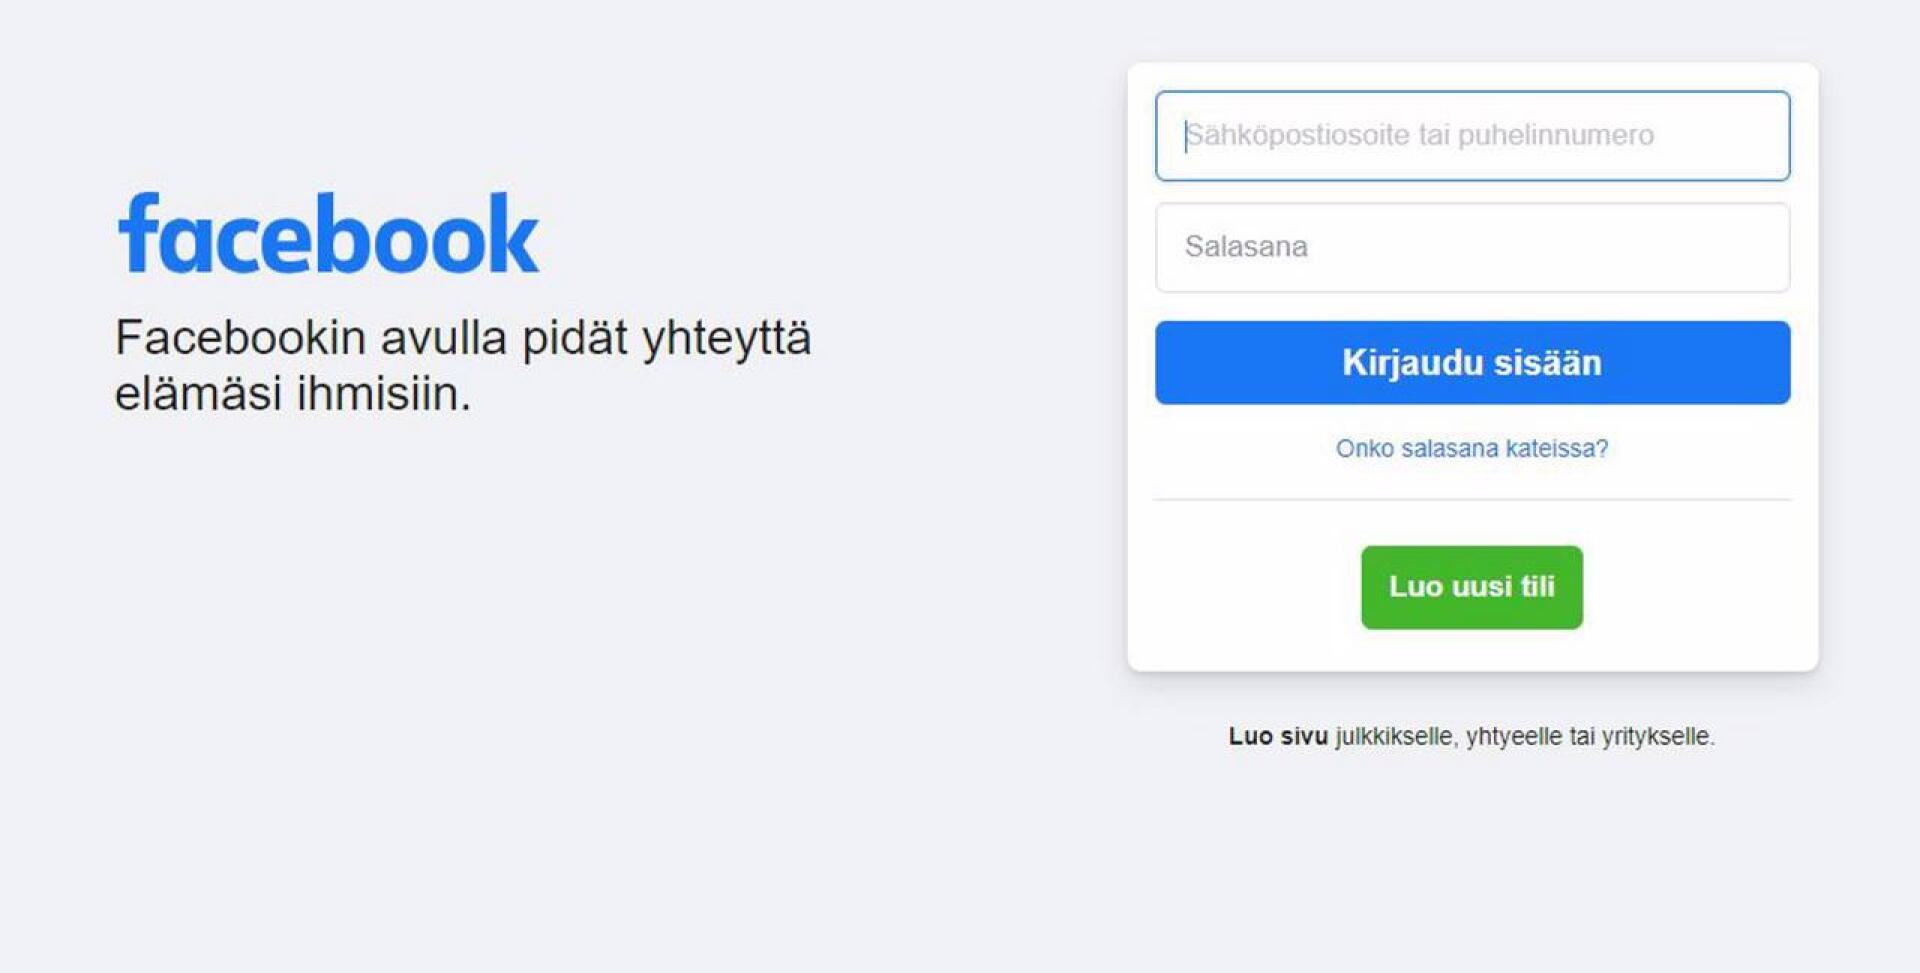 Facebookista varastettujen tietojen joukossa 1,4 miljoonan suomalaisen  tiedot – Kyberturvallisuuskeskus varoittaa identiteettivarkauden riskistä |  Keskipohjanmaa